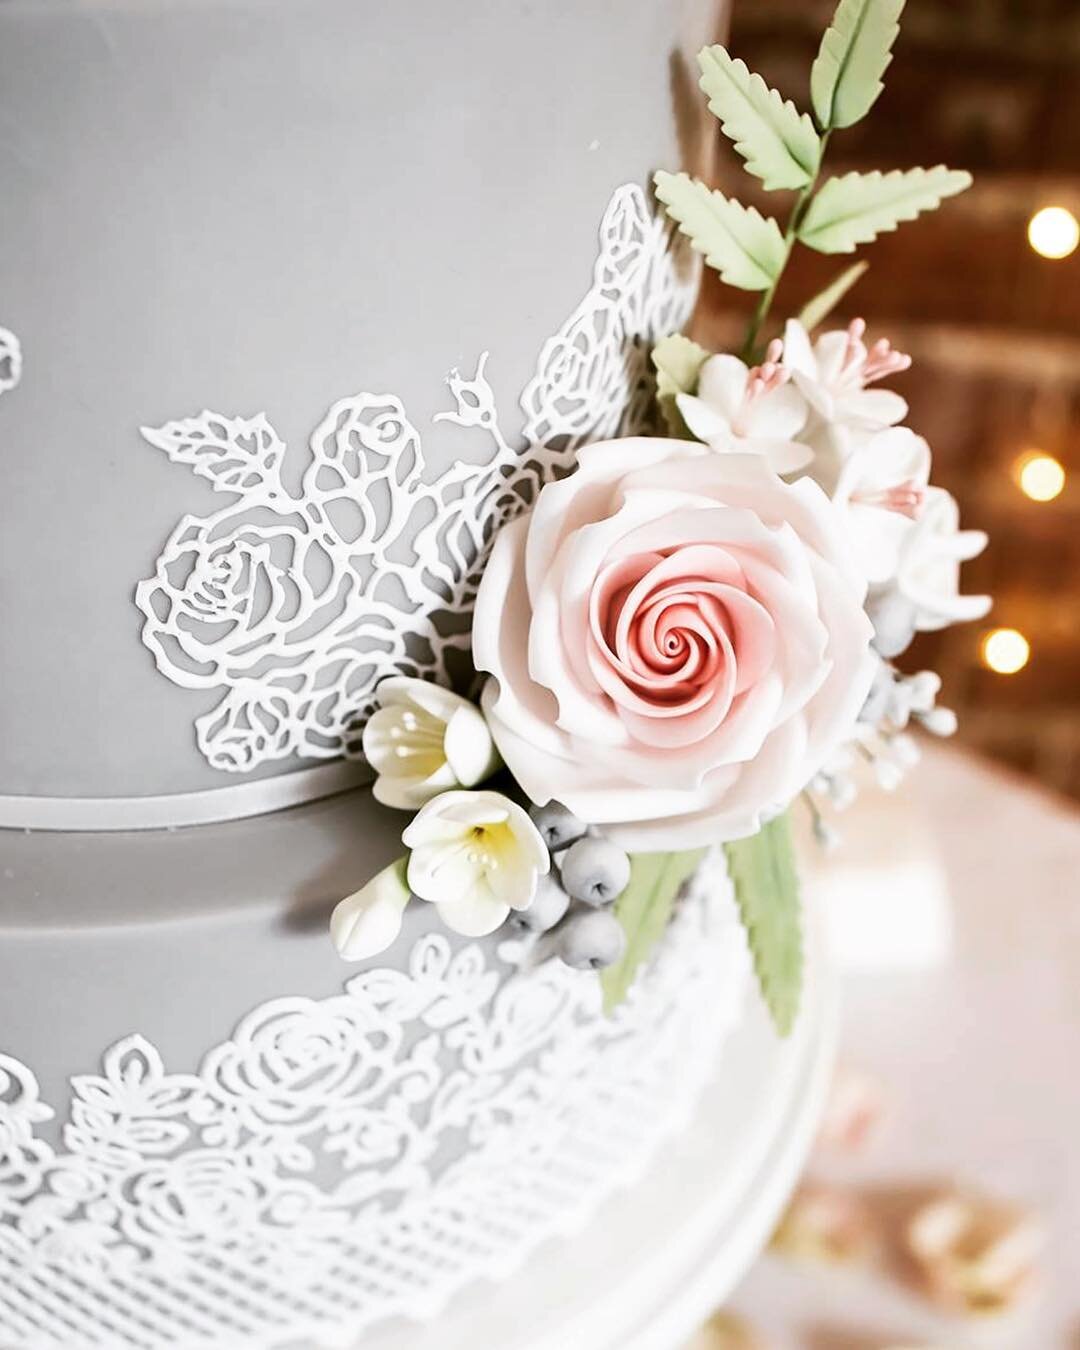 The #weddingcake simple and effective #wedding #weddingphotography #weddingphotographer #weddingday